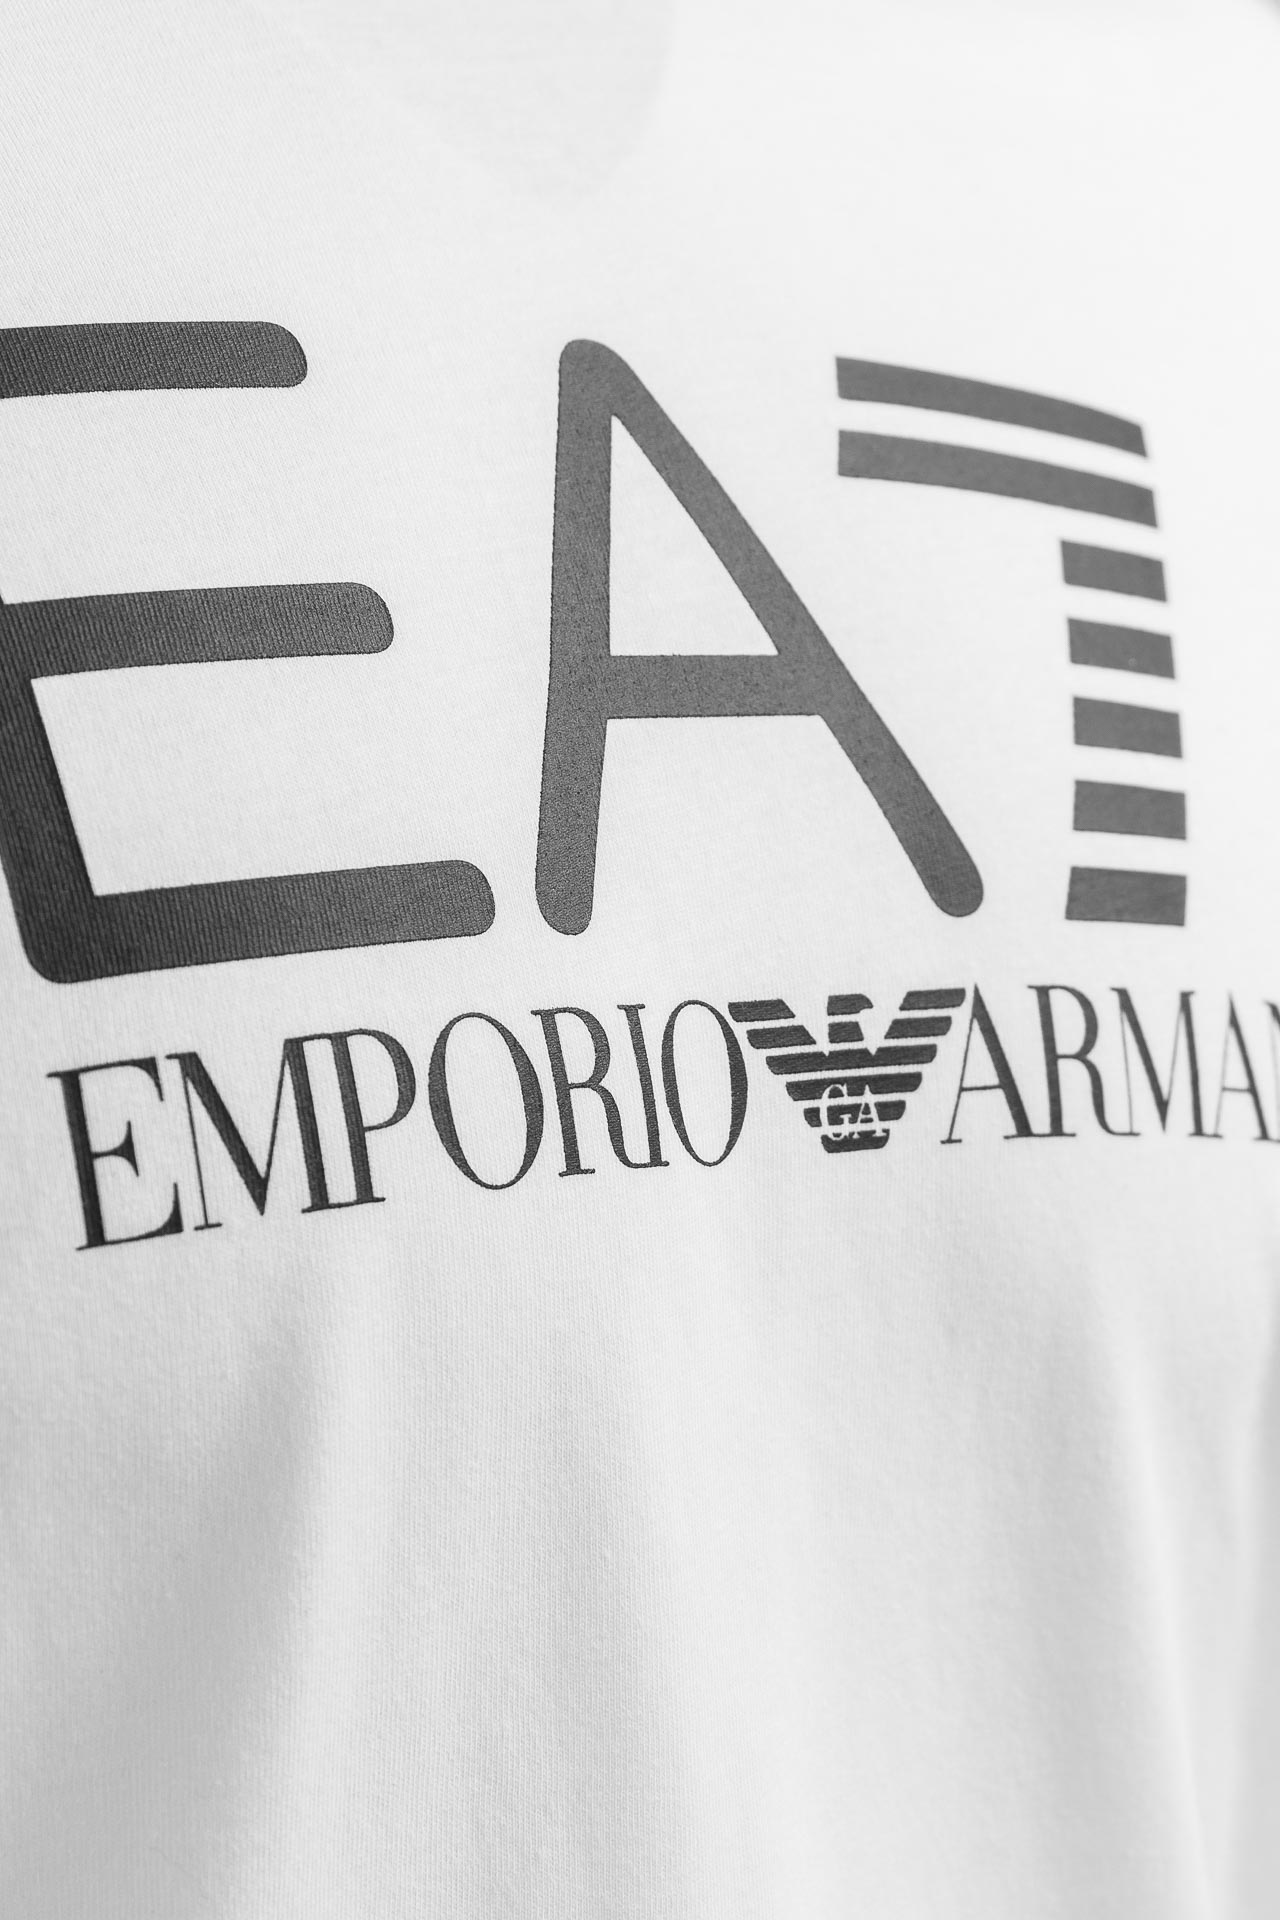 Koszulka męska Emporio Armani 6LPT03-PJ3BZ-1100